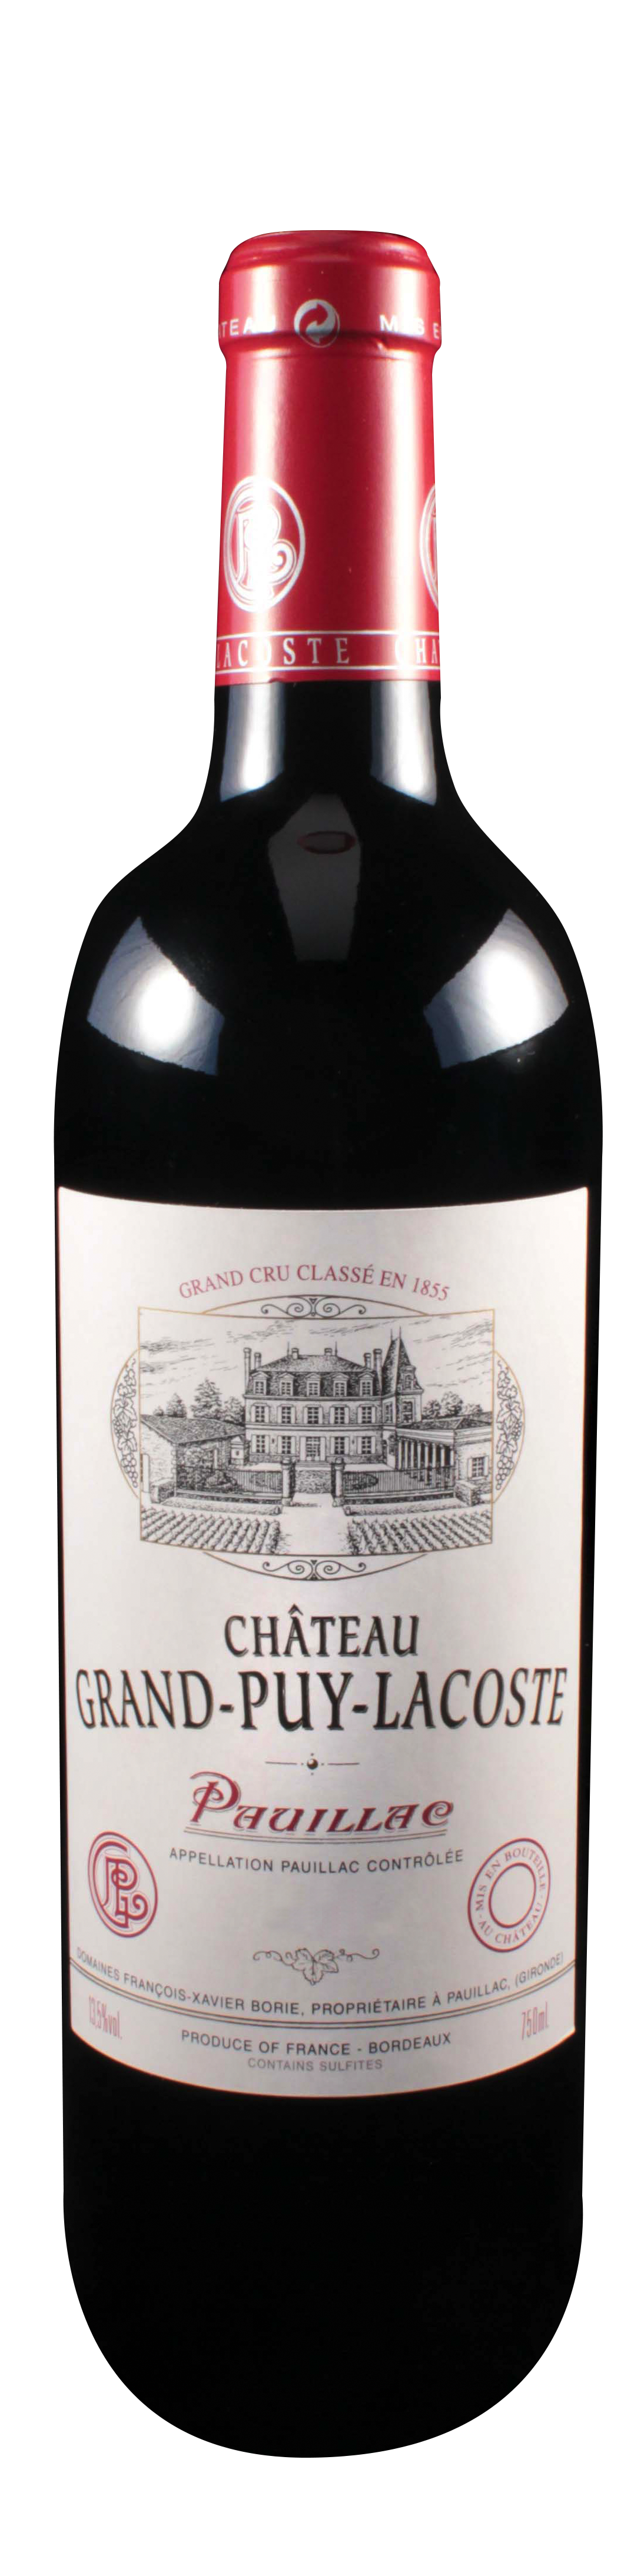 Bottle shot of 2006 Château Grand Puy Lacoste, 5ème Cru Pauillac